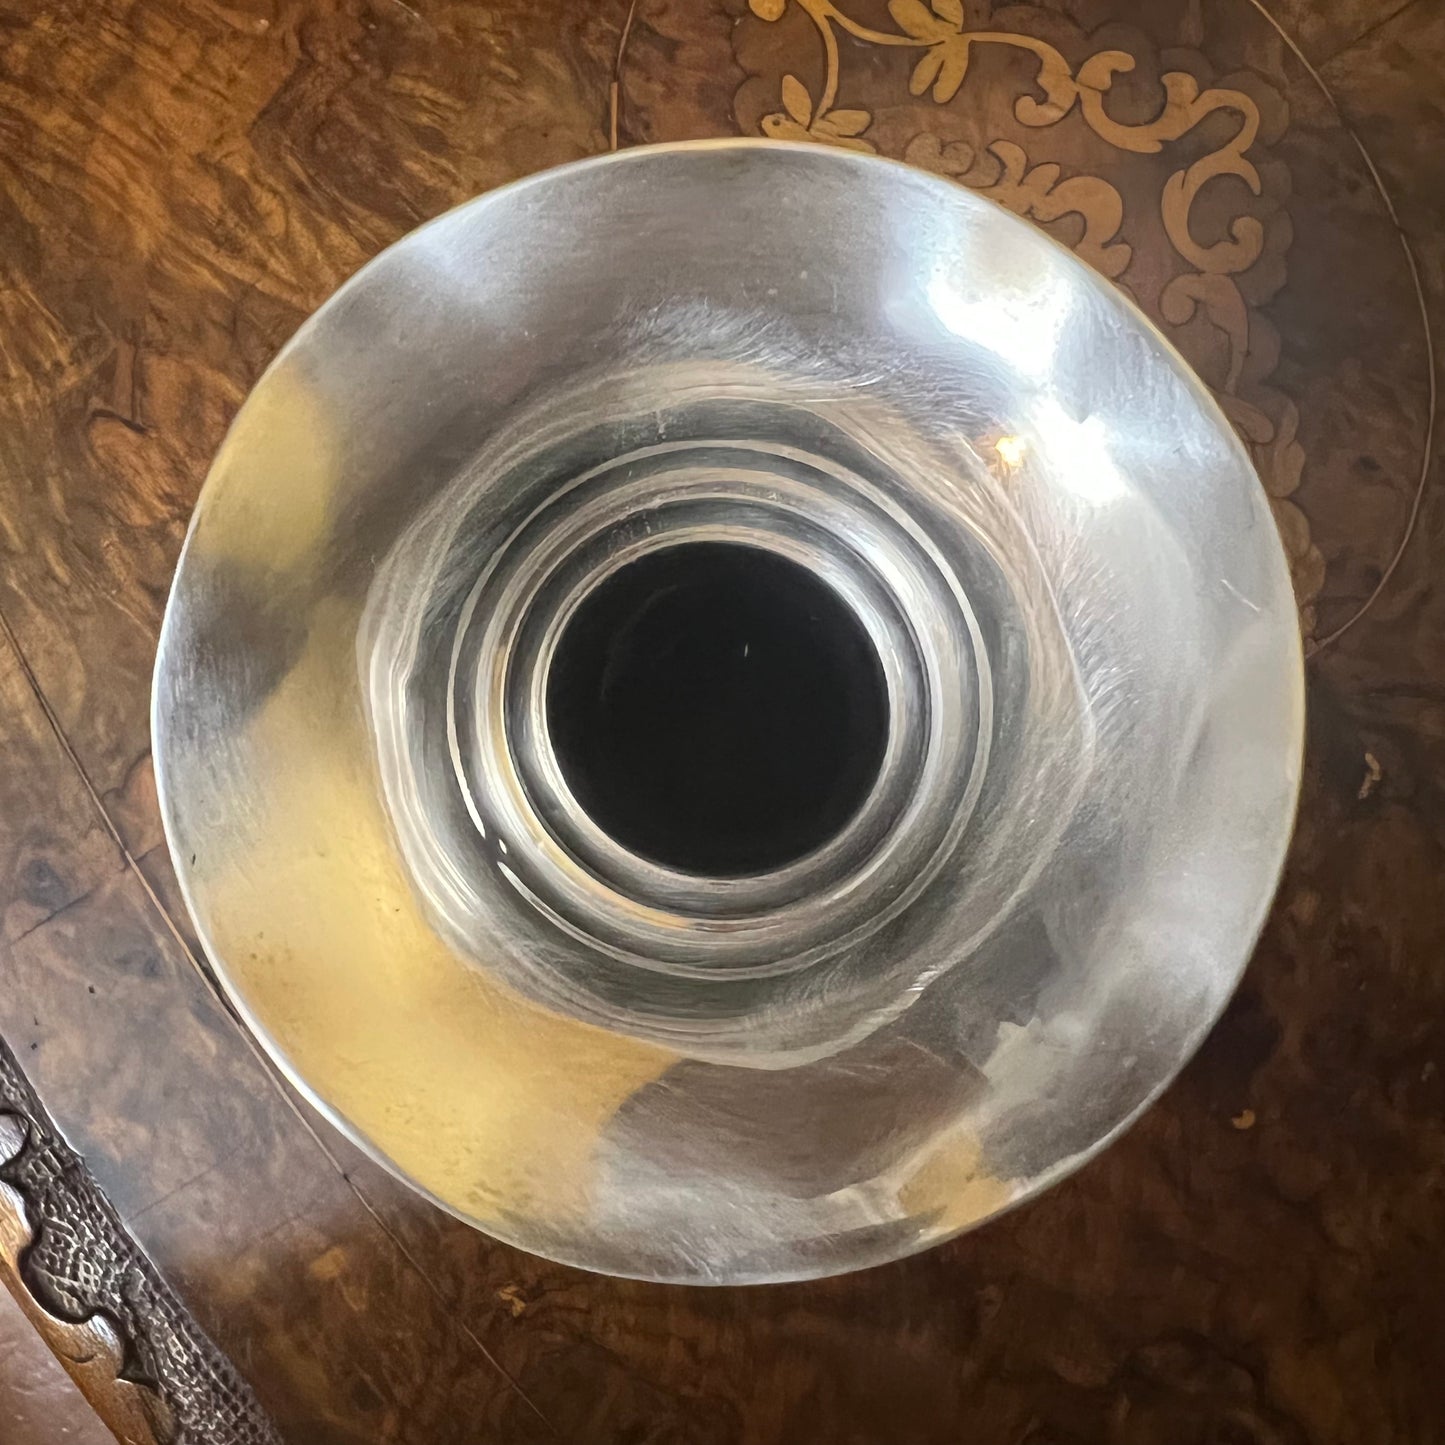 Sterling Silver Cylinder Vase